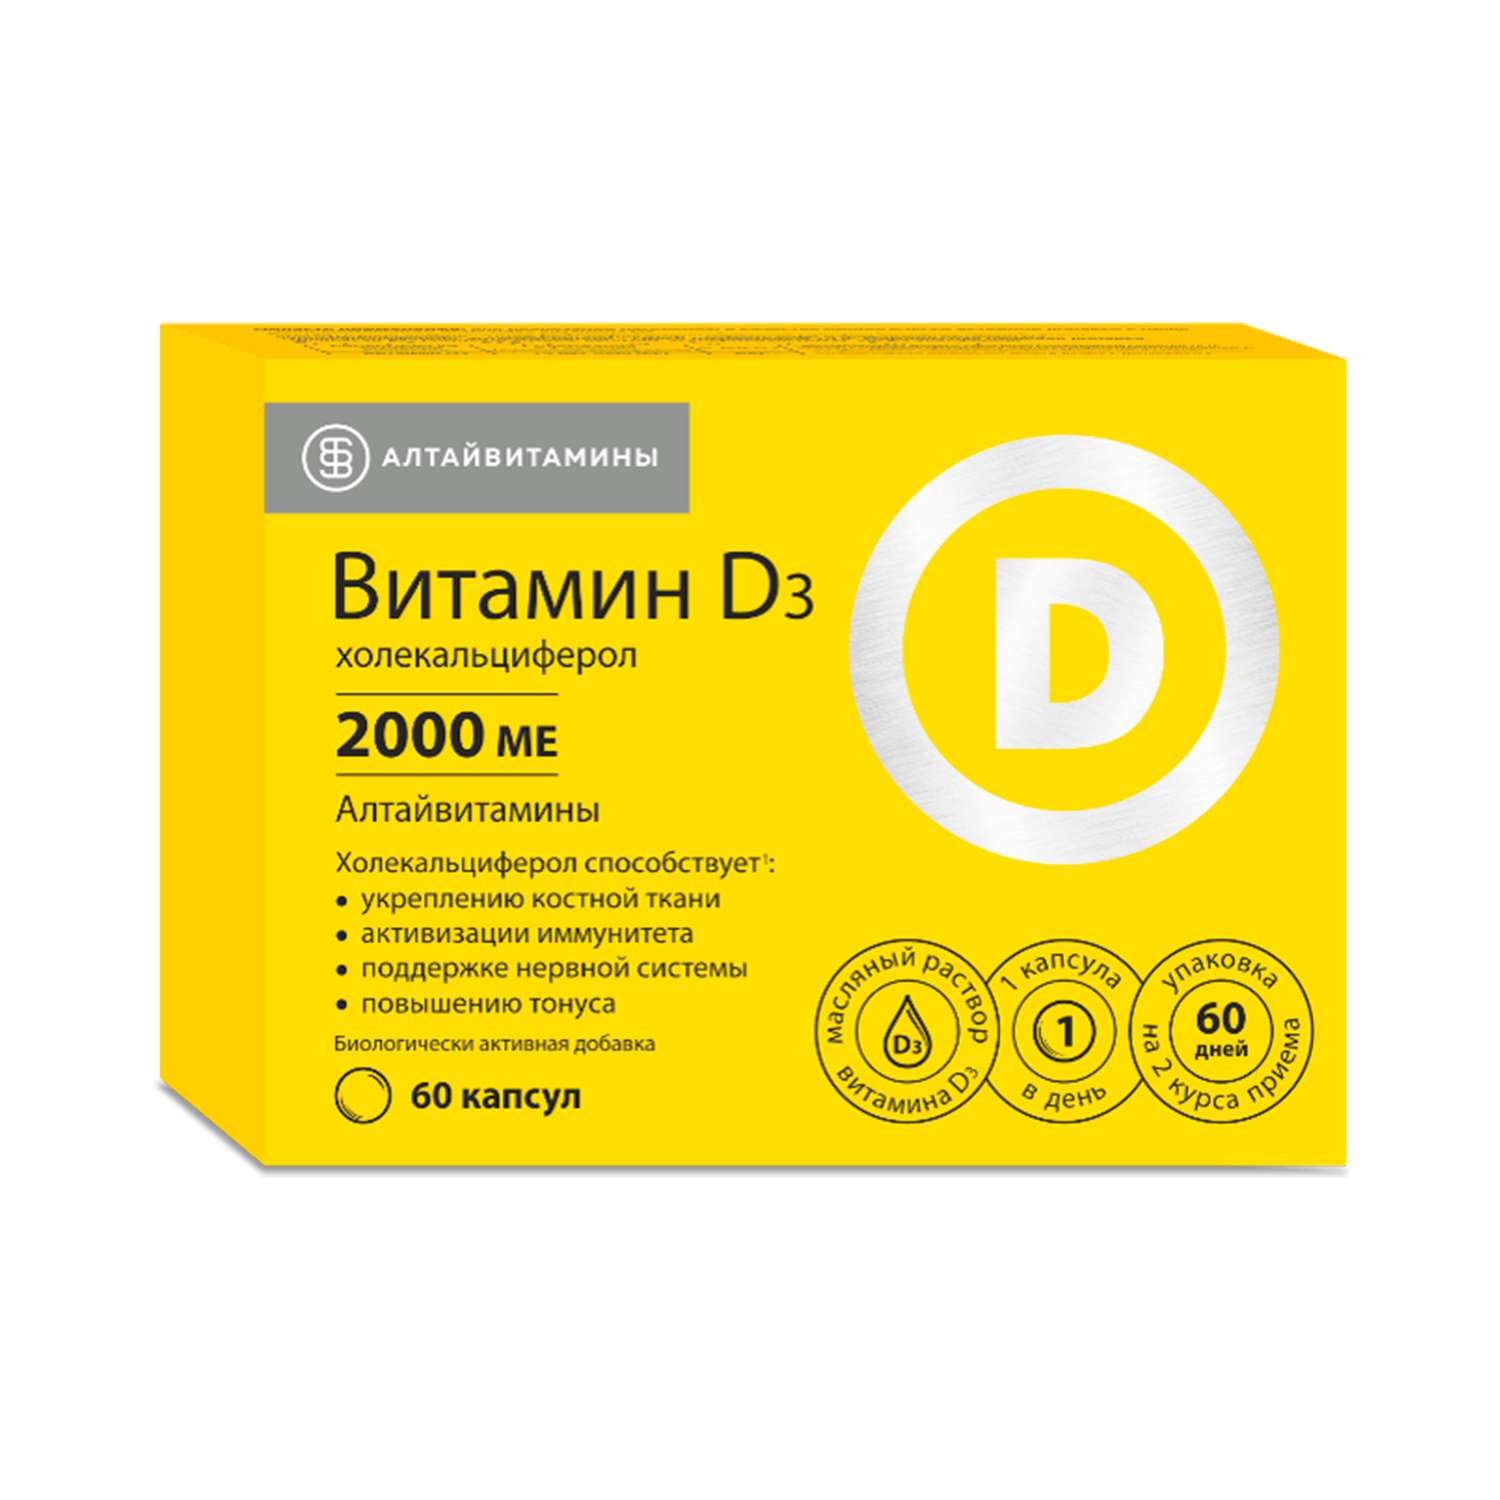 Витамин Д3 2000 МЕ Алтайвитамины 60 капсул - фото 1